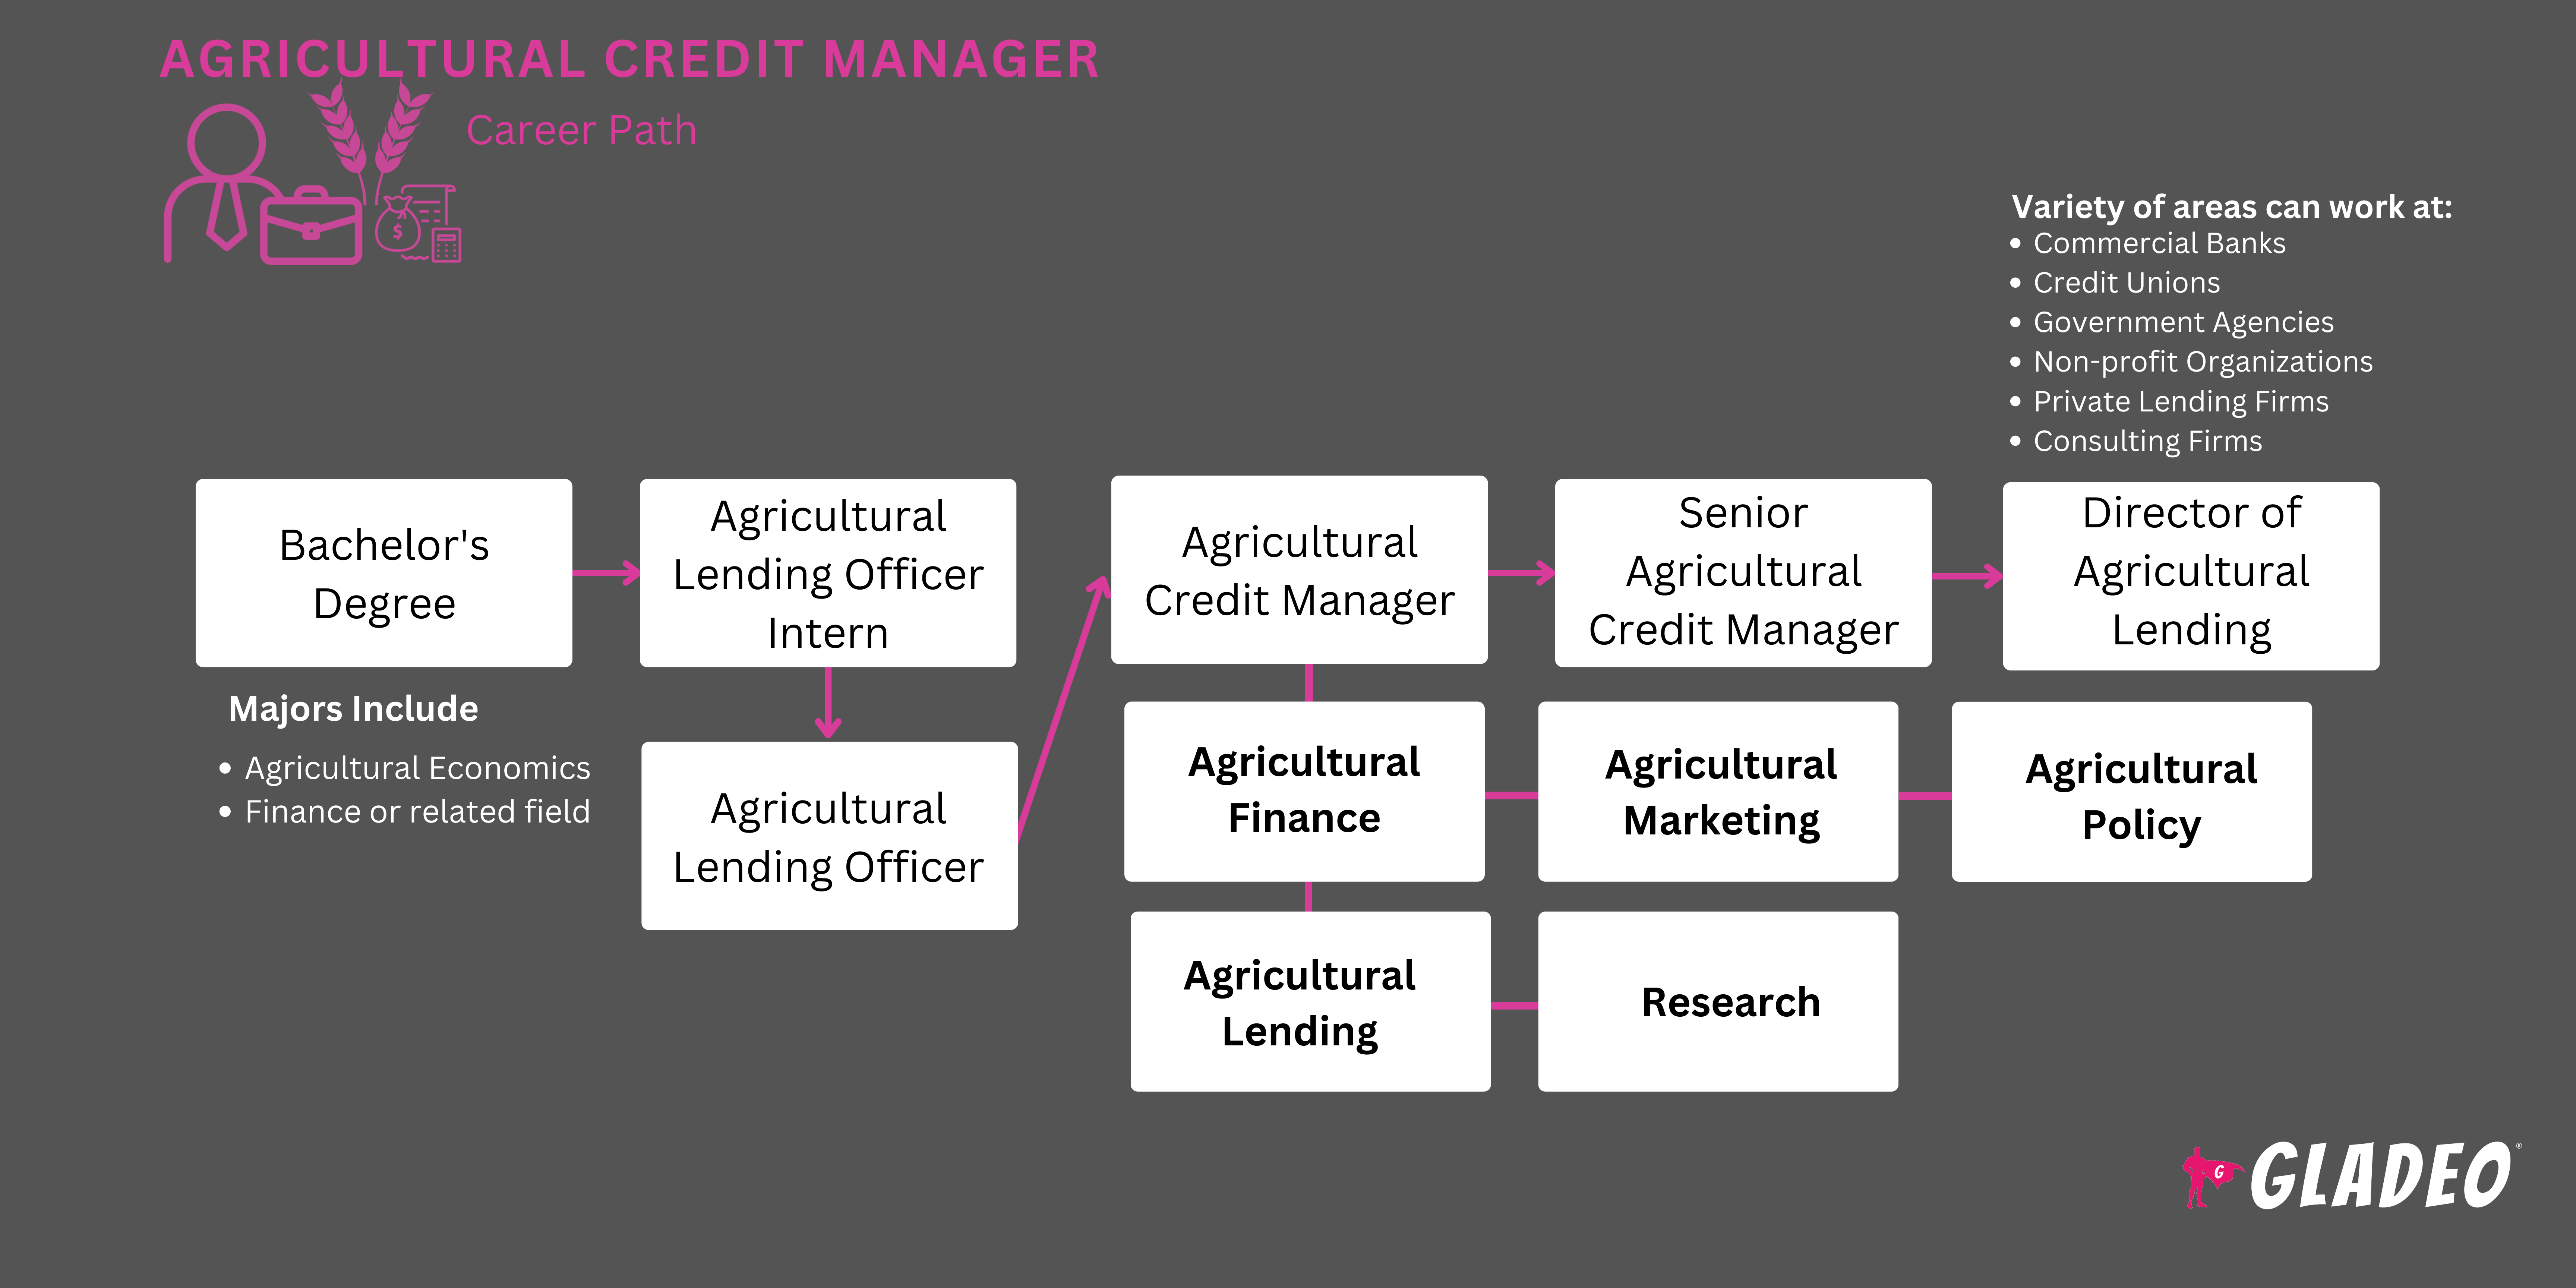 Gestor de crédito agrícola